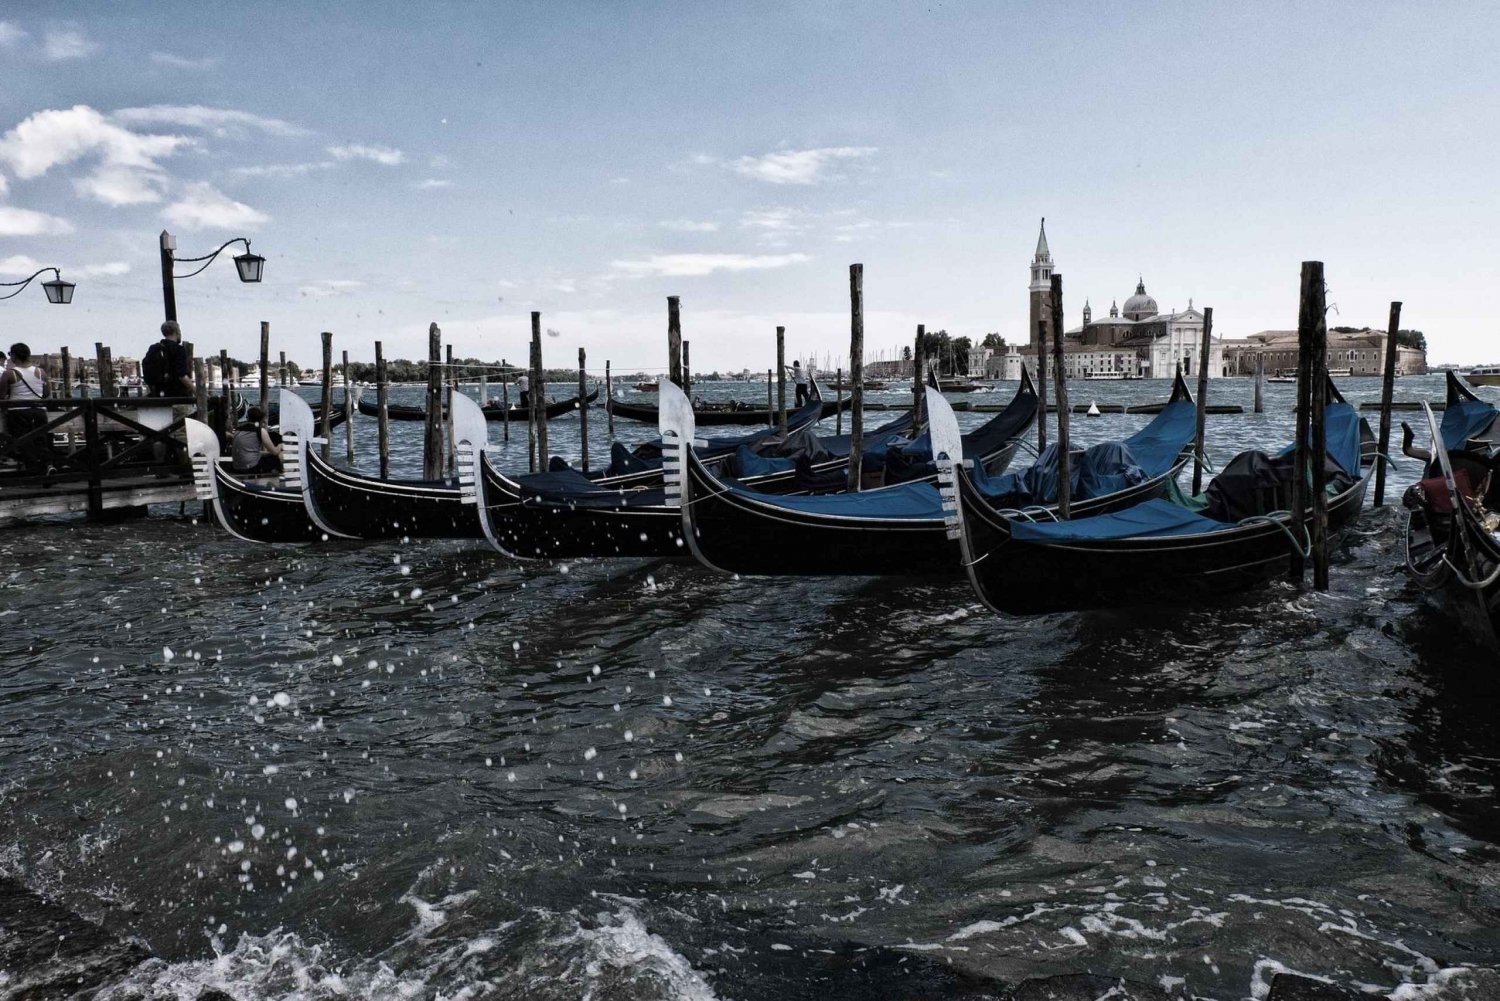 Venice: Gondola & Doge's Palace